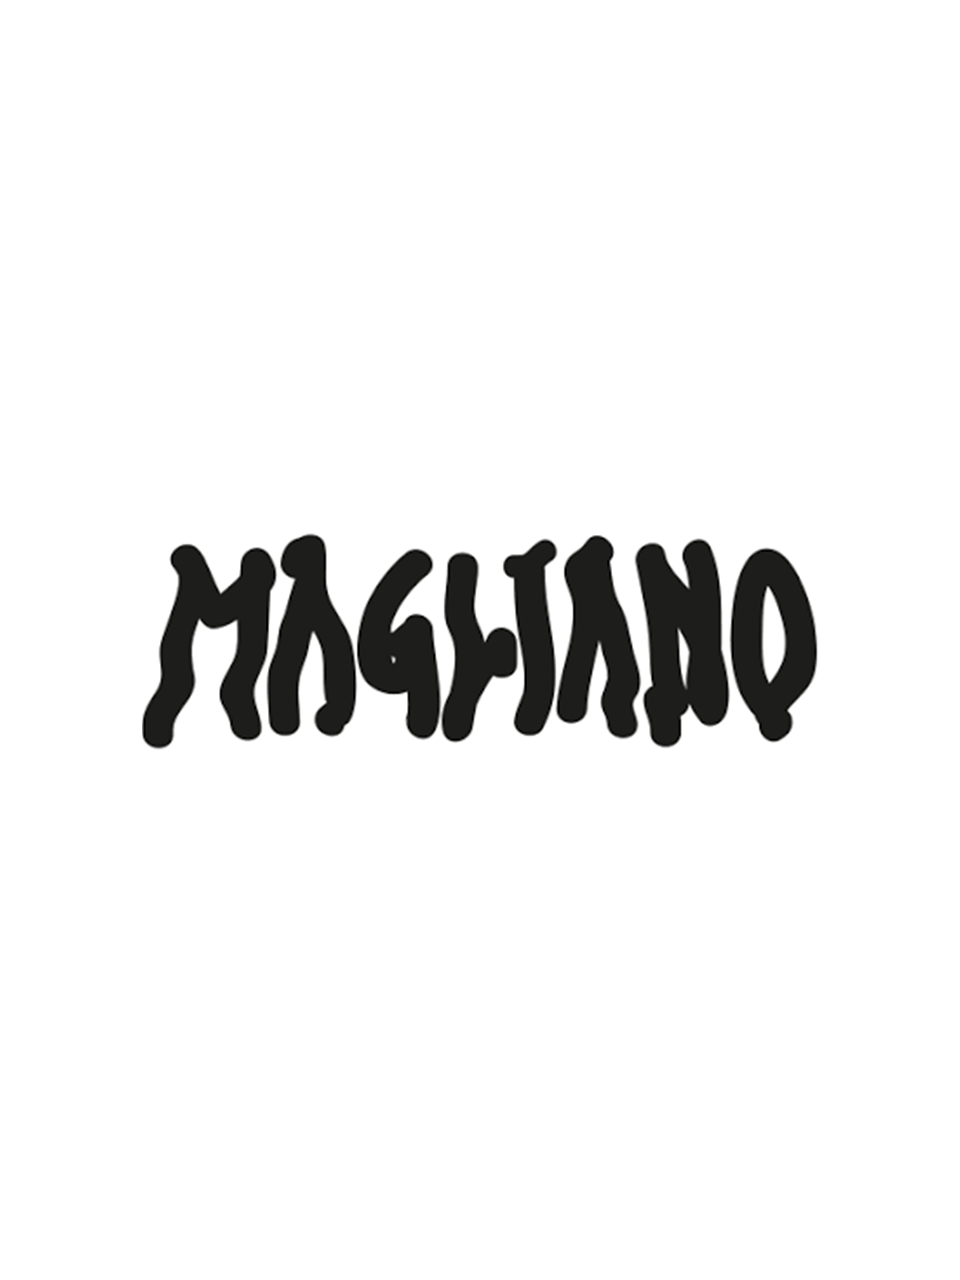 MAGLIANO - PRTPRT SHOP